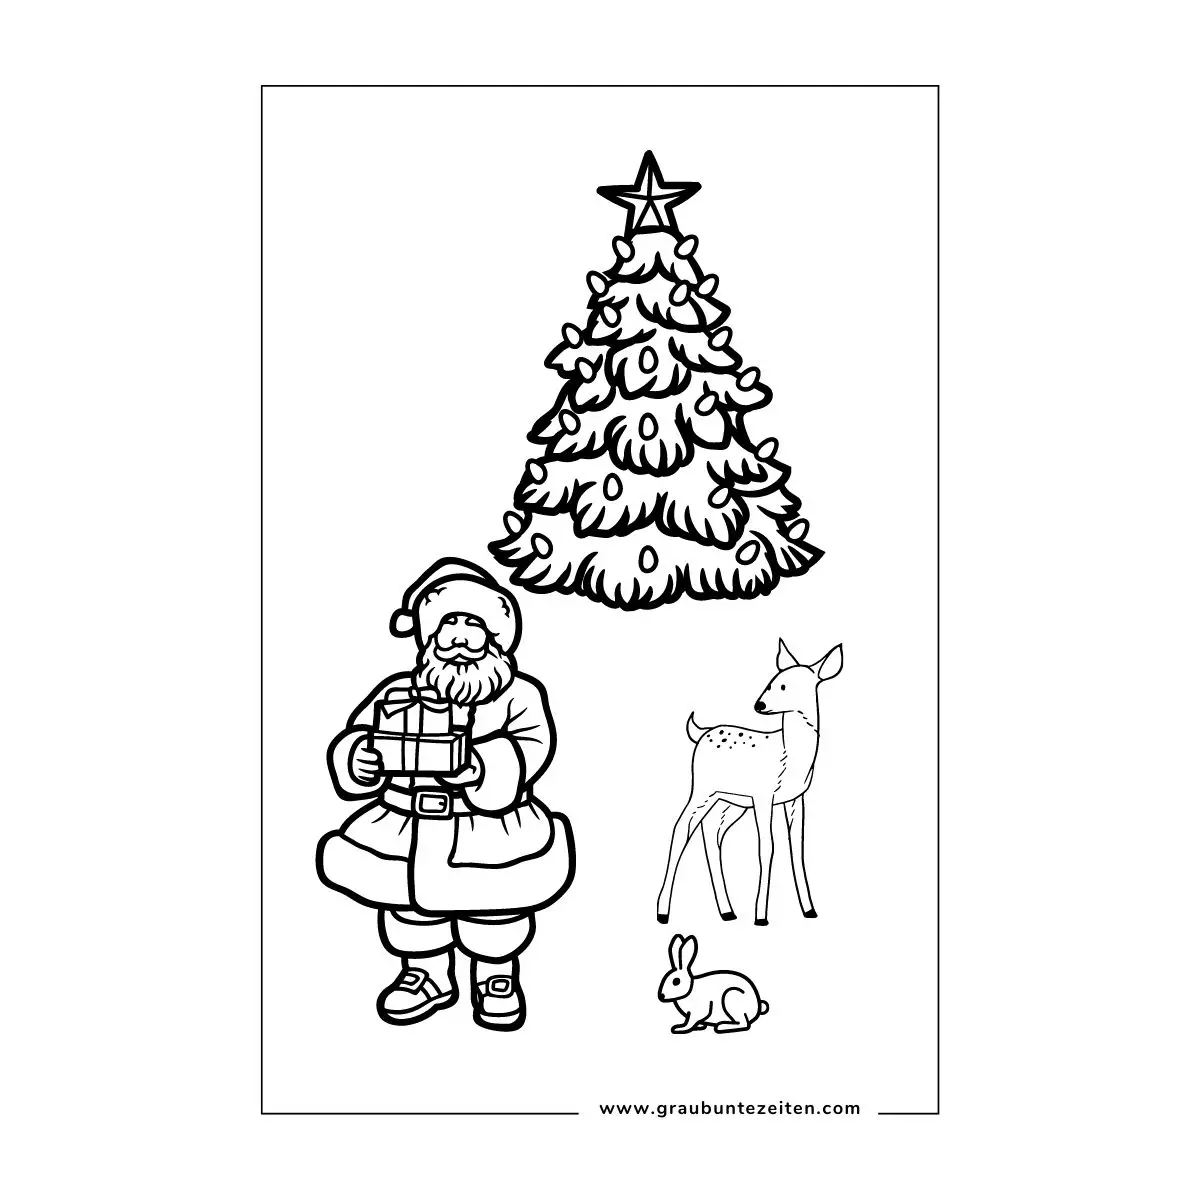 Ausmalbilder Weihnachten kostenlos drucken. Weihnachtsmann mit Geschenken, ein Hase und ein Reh. Im Hintergrund ein Weihnachtsbaum.